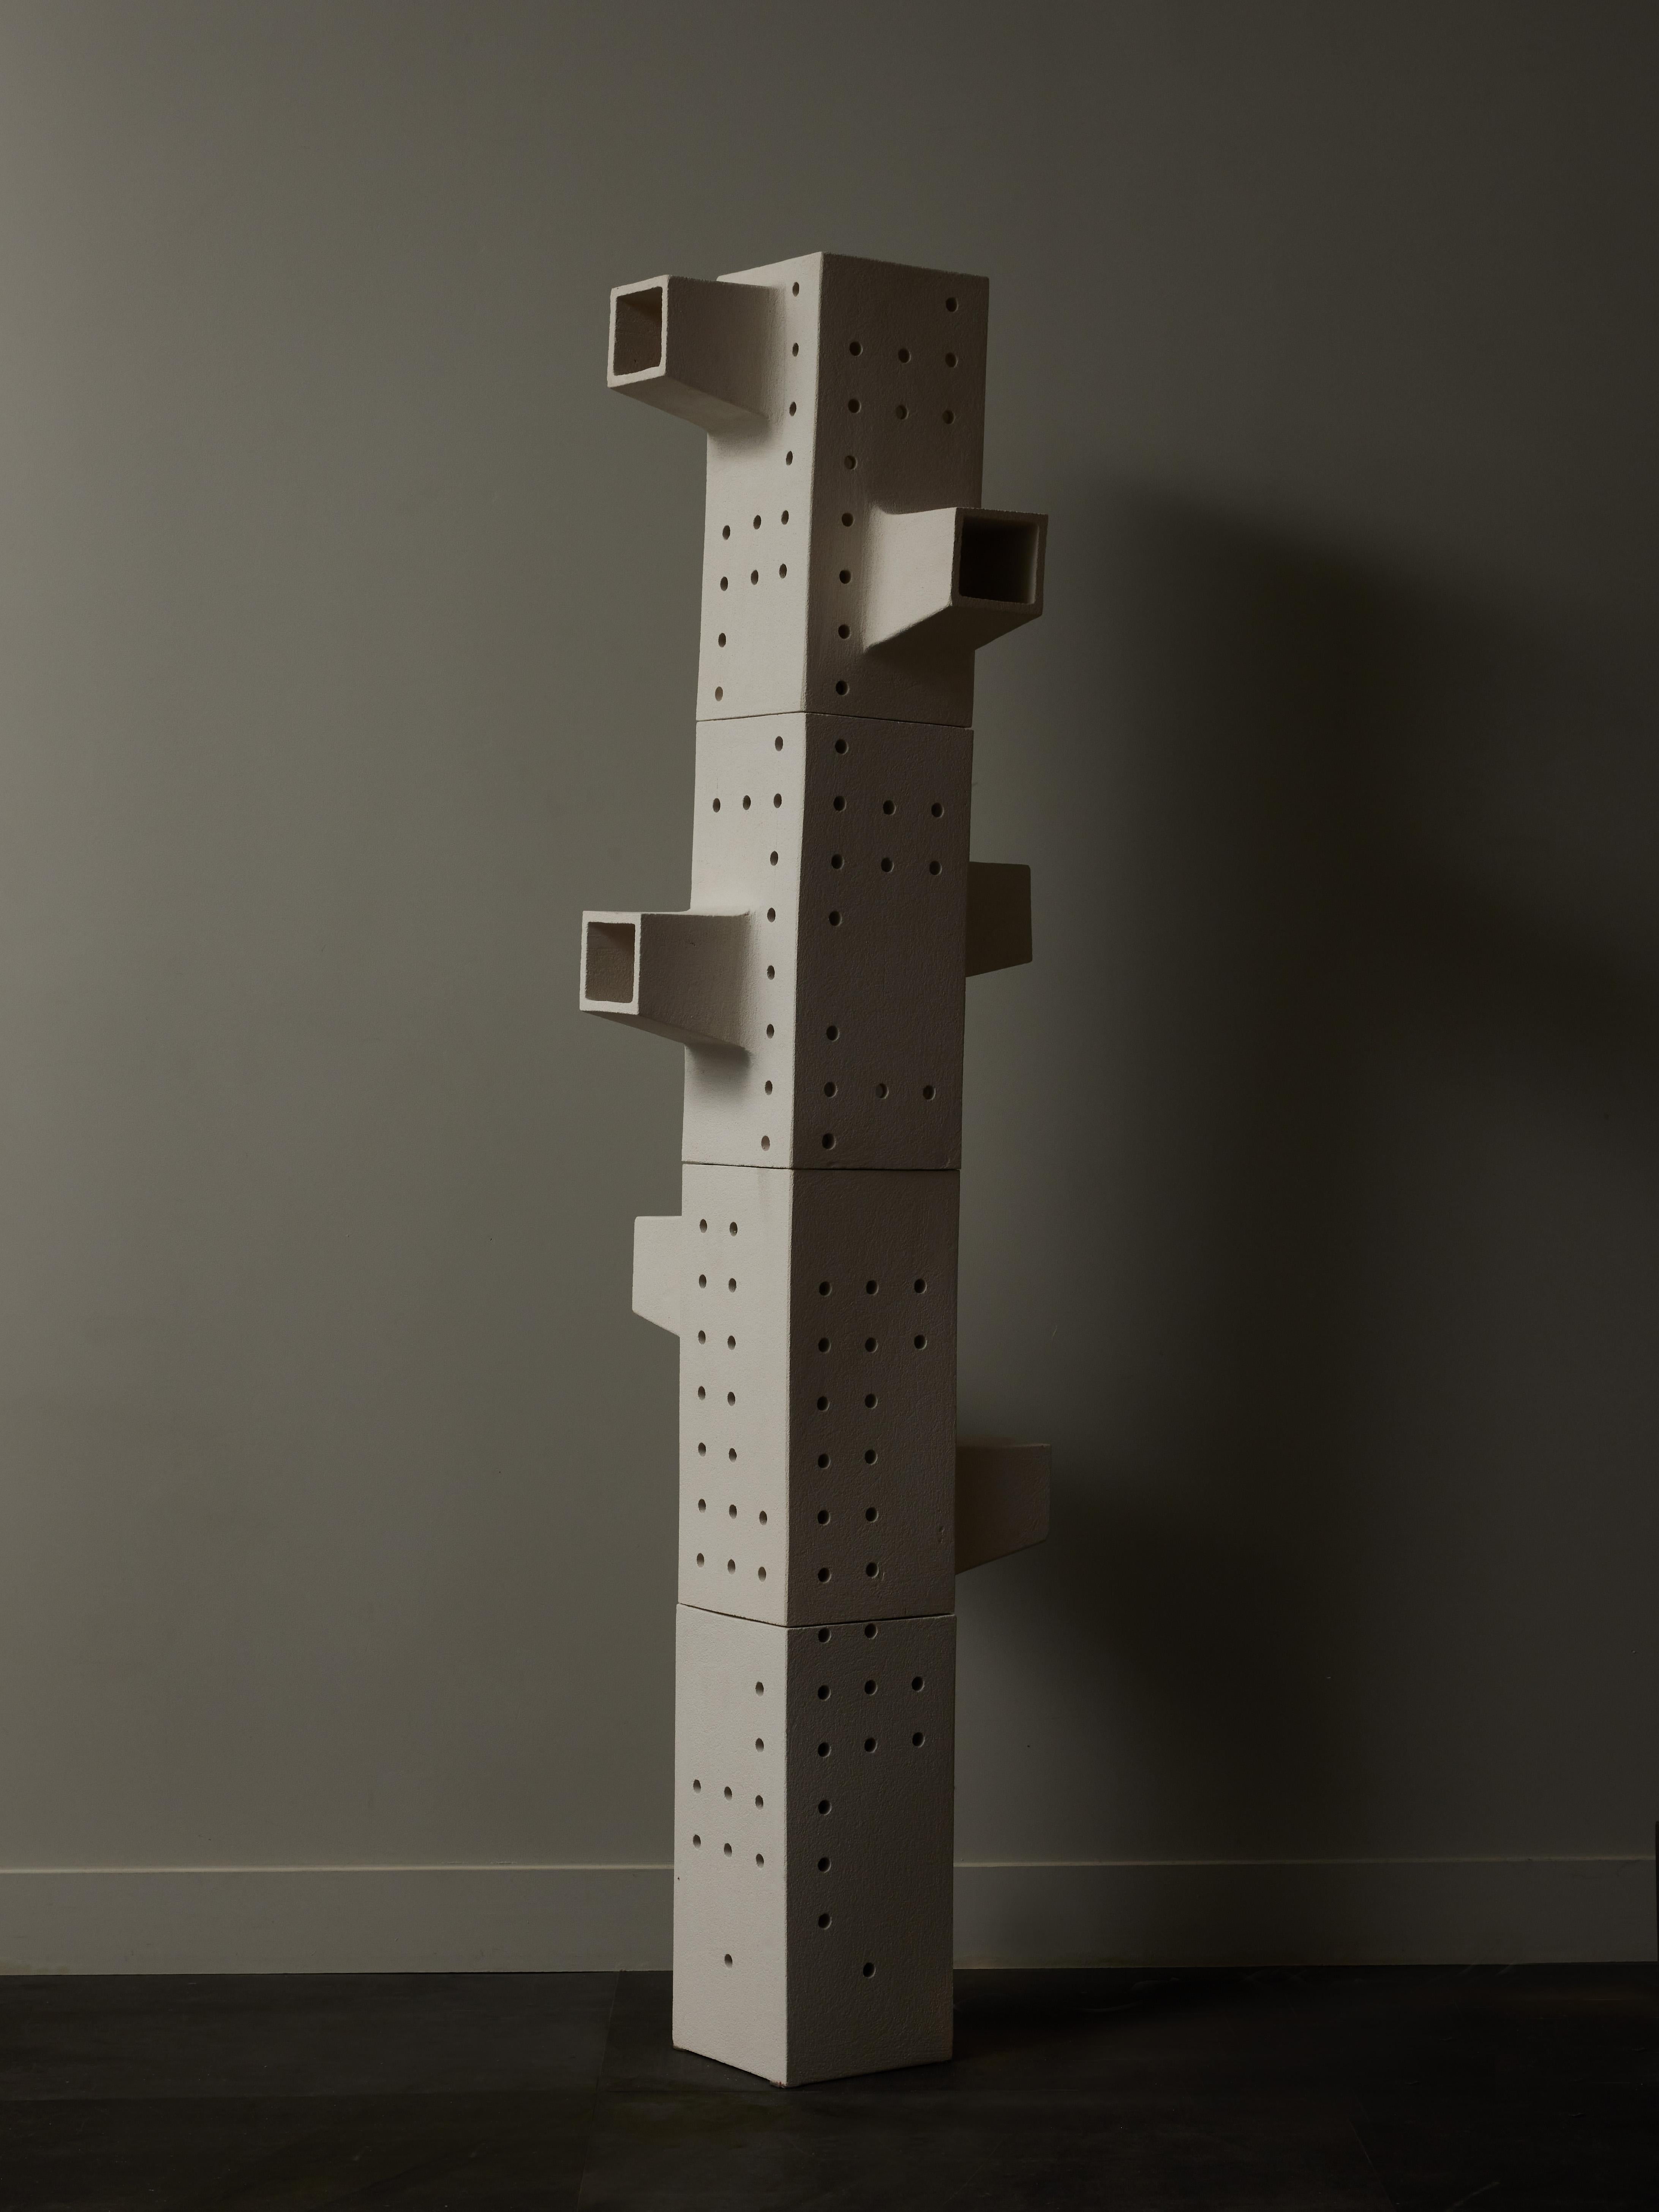 Lampadaire modulaire composé de quatre pièces rectangulaires en céramique avec des décors à trous laissant passer la lumière
Réalisé par le céramiste contemporain français Frédéric Bourdiec